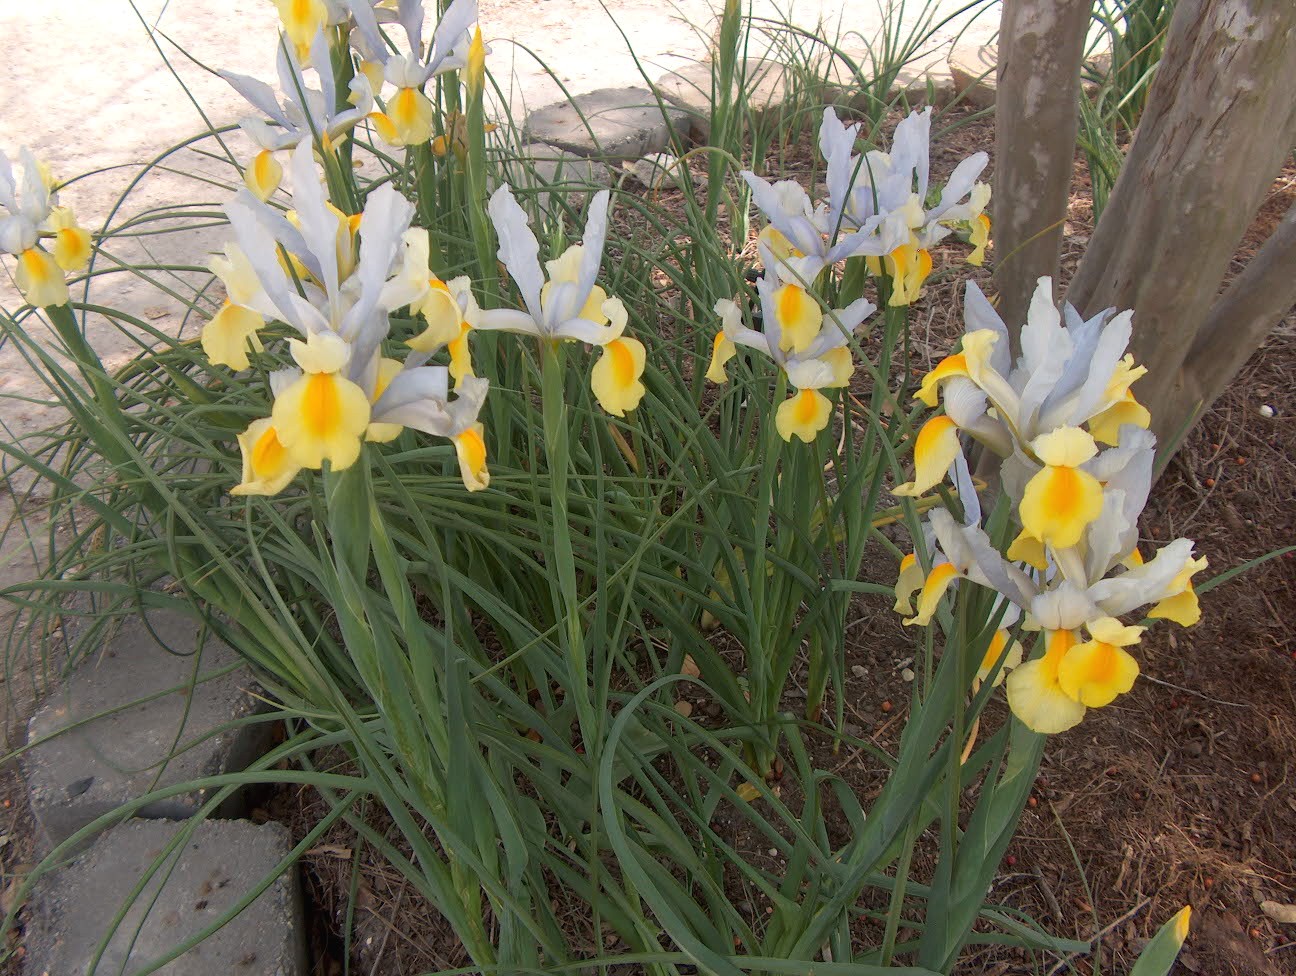 Iris x hollandica / Iris x hollandica